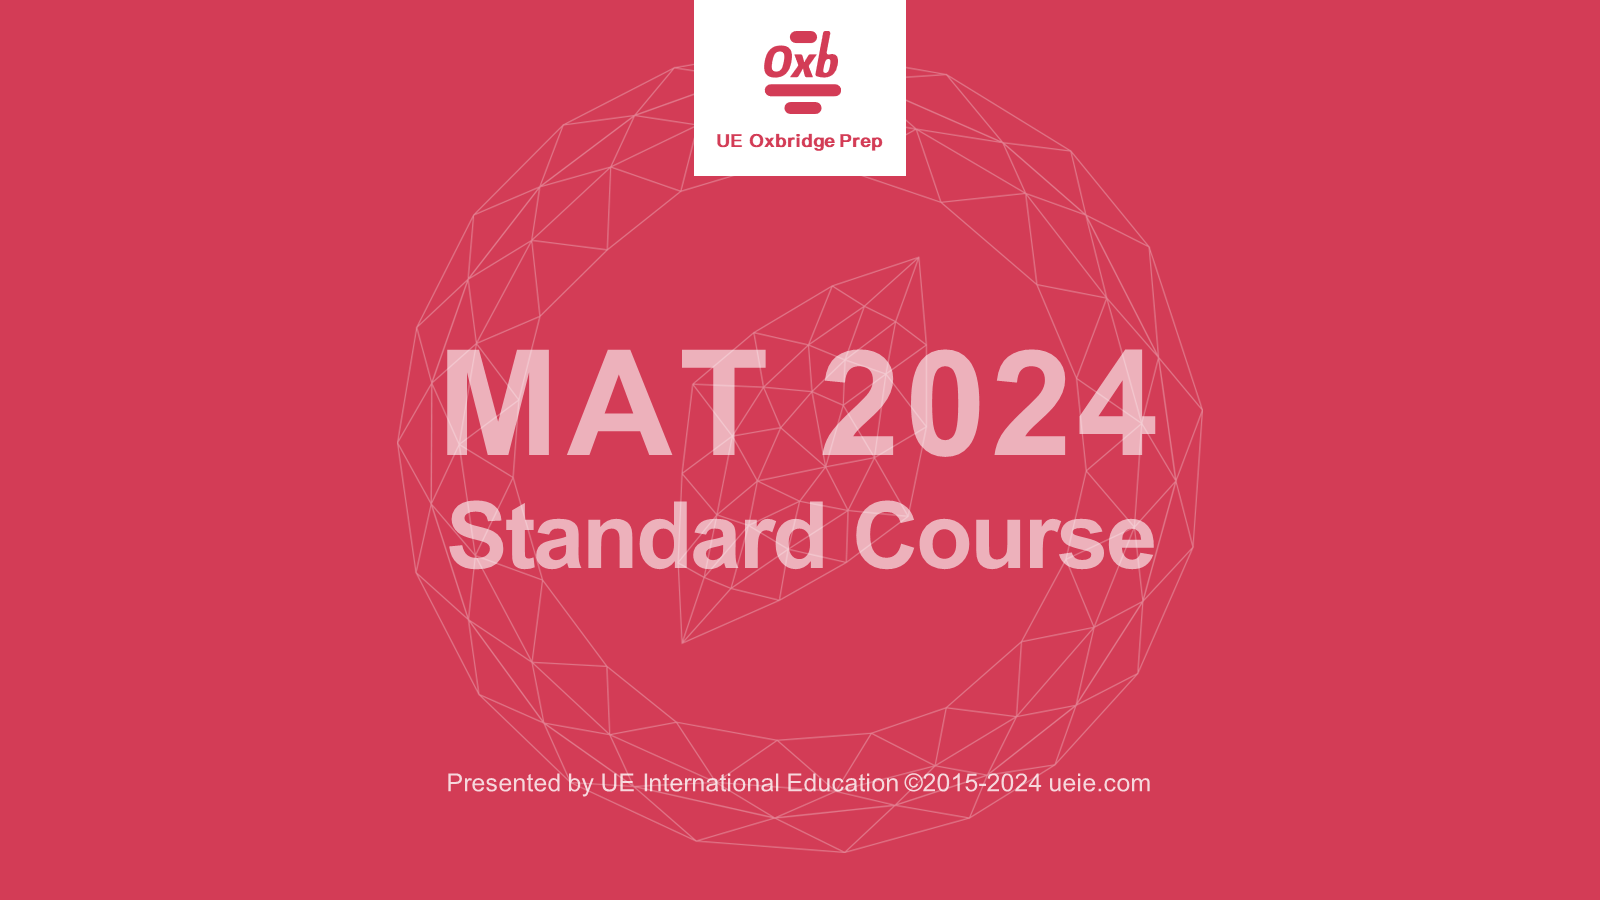 Oxford MAT 2024 Standard Course-Video